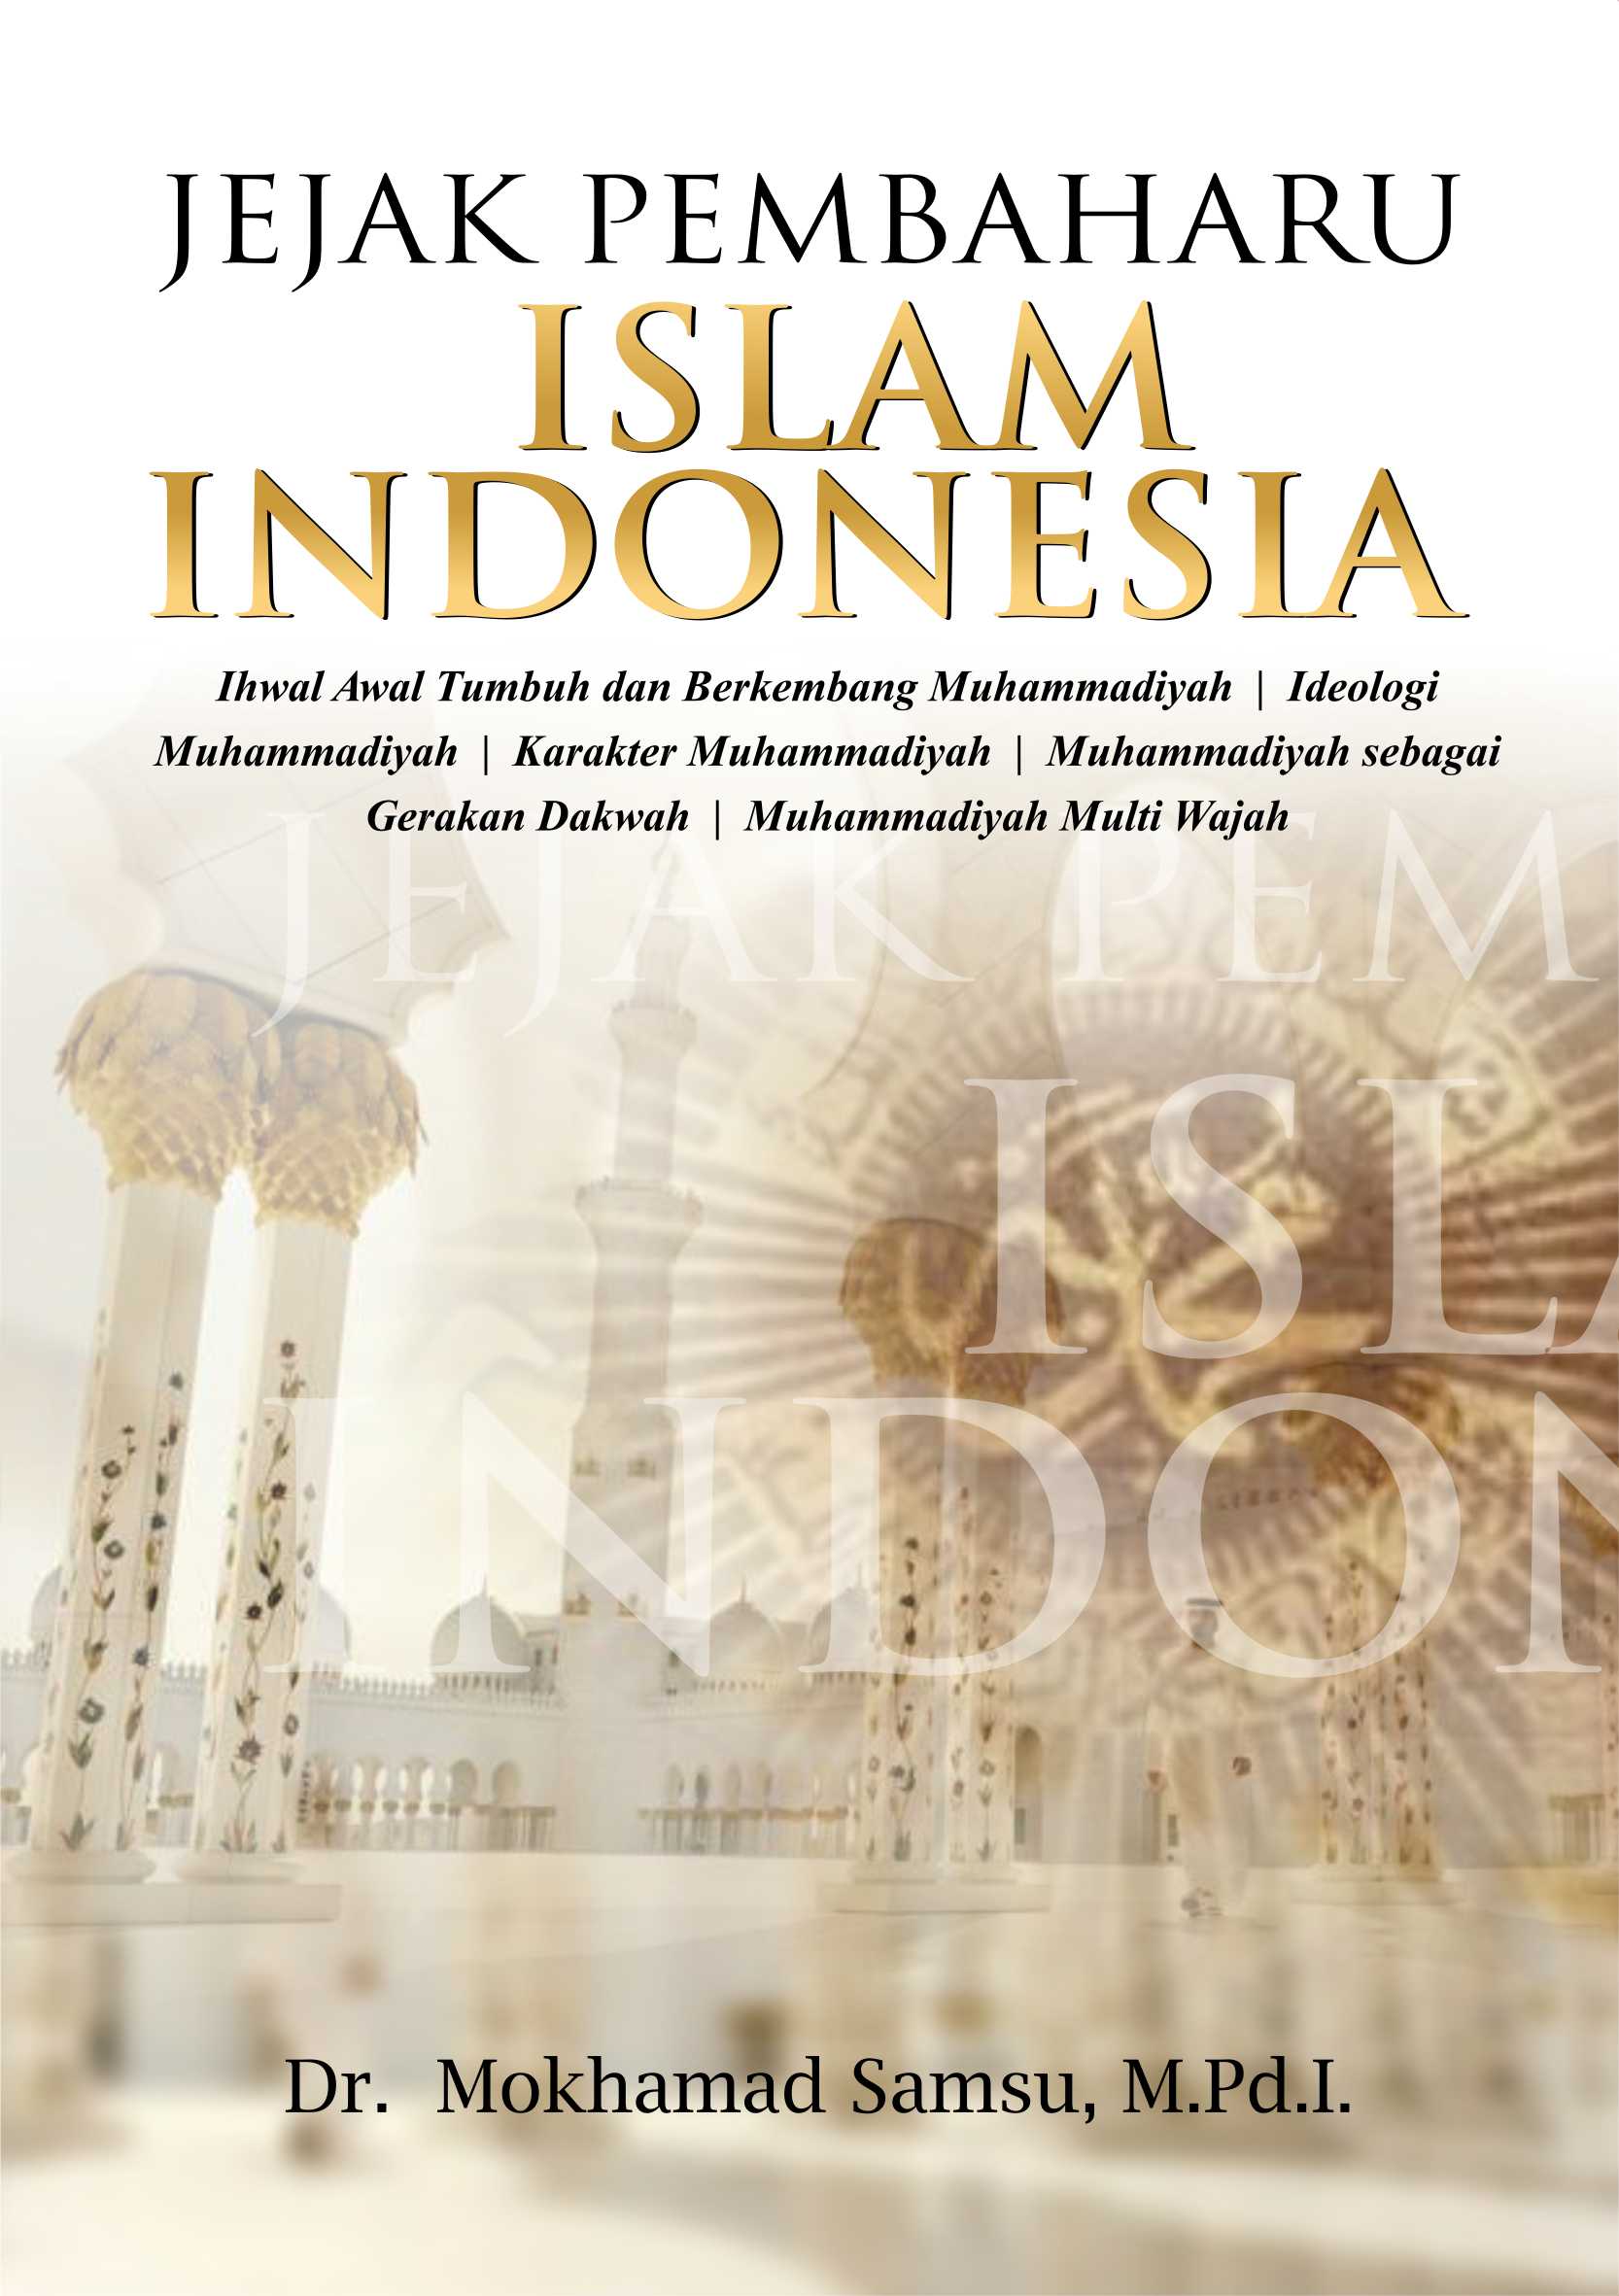 Buku Jejak Pembaharu Islam